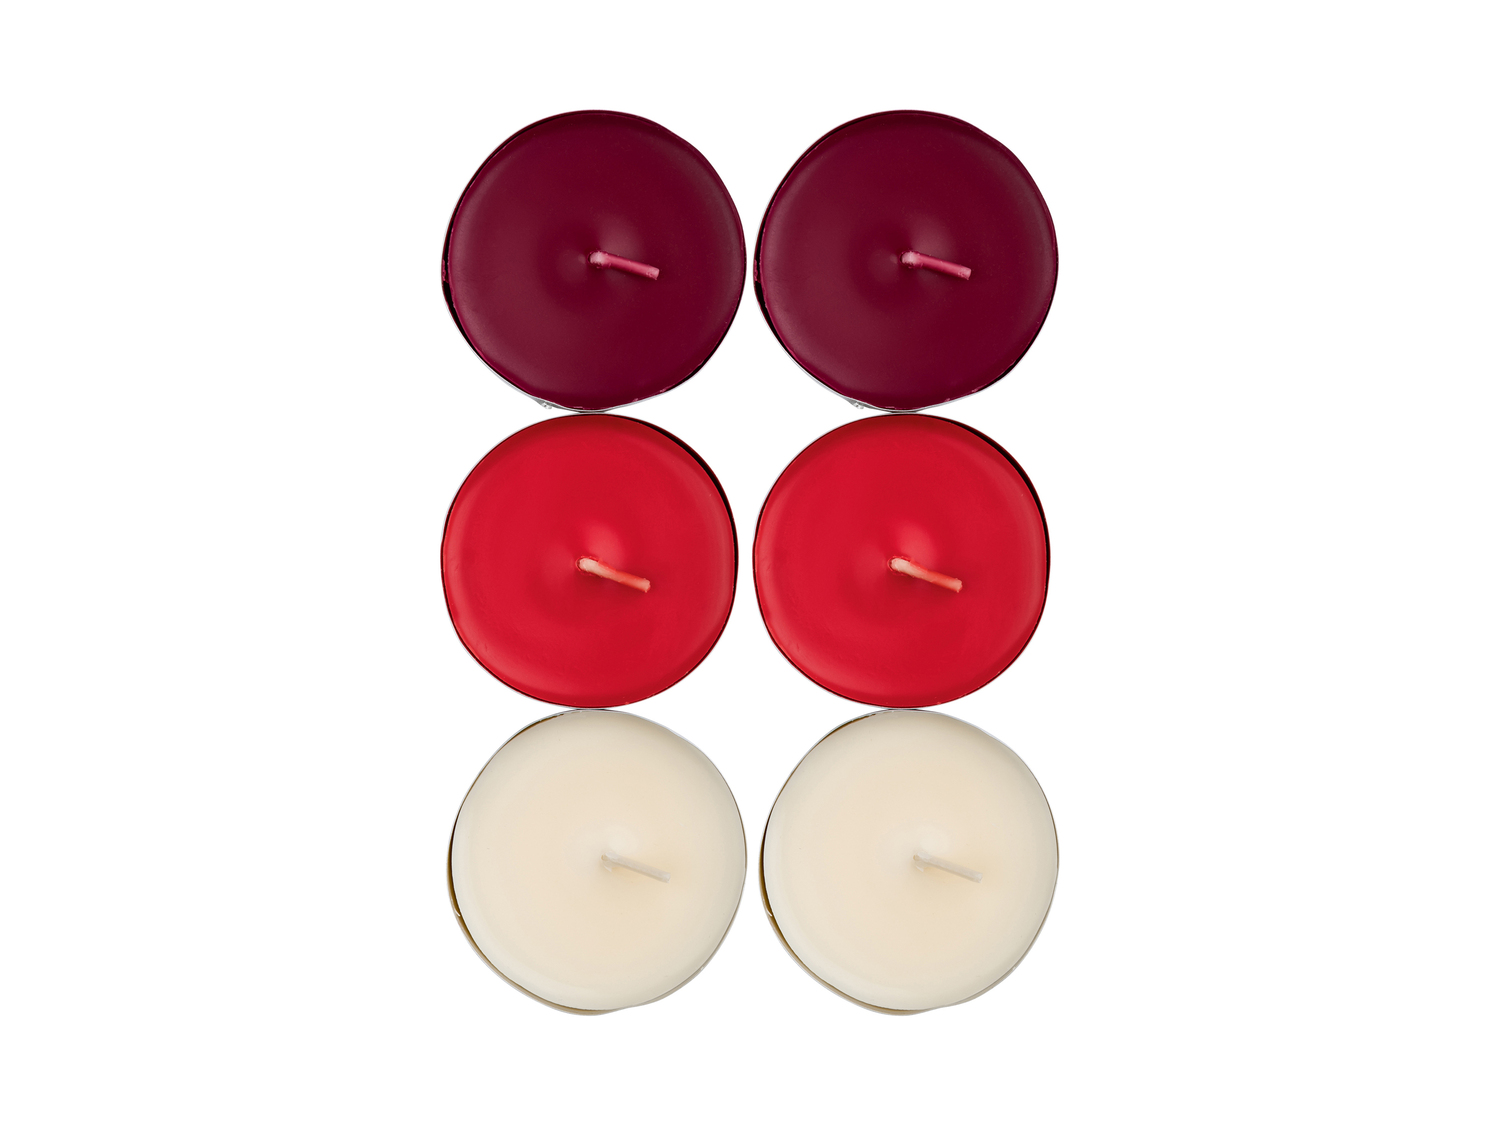 Set candeline profumate Melinera, prezzo 1.99 &#8364;  
6 o 18 pezzi
Caratteristiche